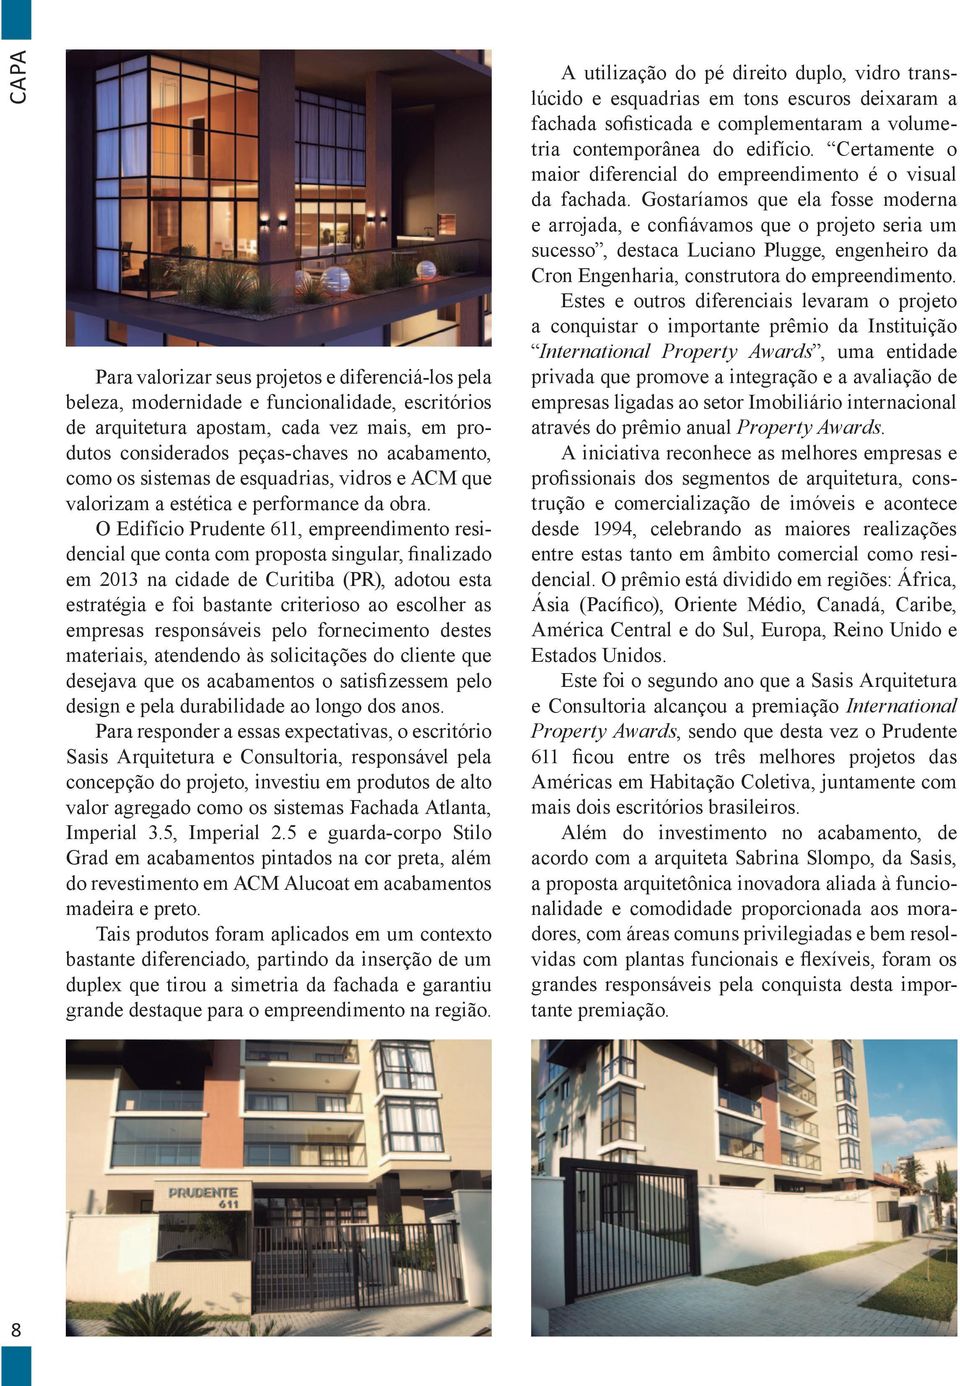 O Edifício Prudente 611, empreendimento residencial que conta com proposta singular, finalizado em 2013 na cidade de Curitiba (PR), adotou esta estratégia e foi bastante criterioso ao escolher as